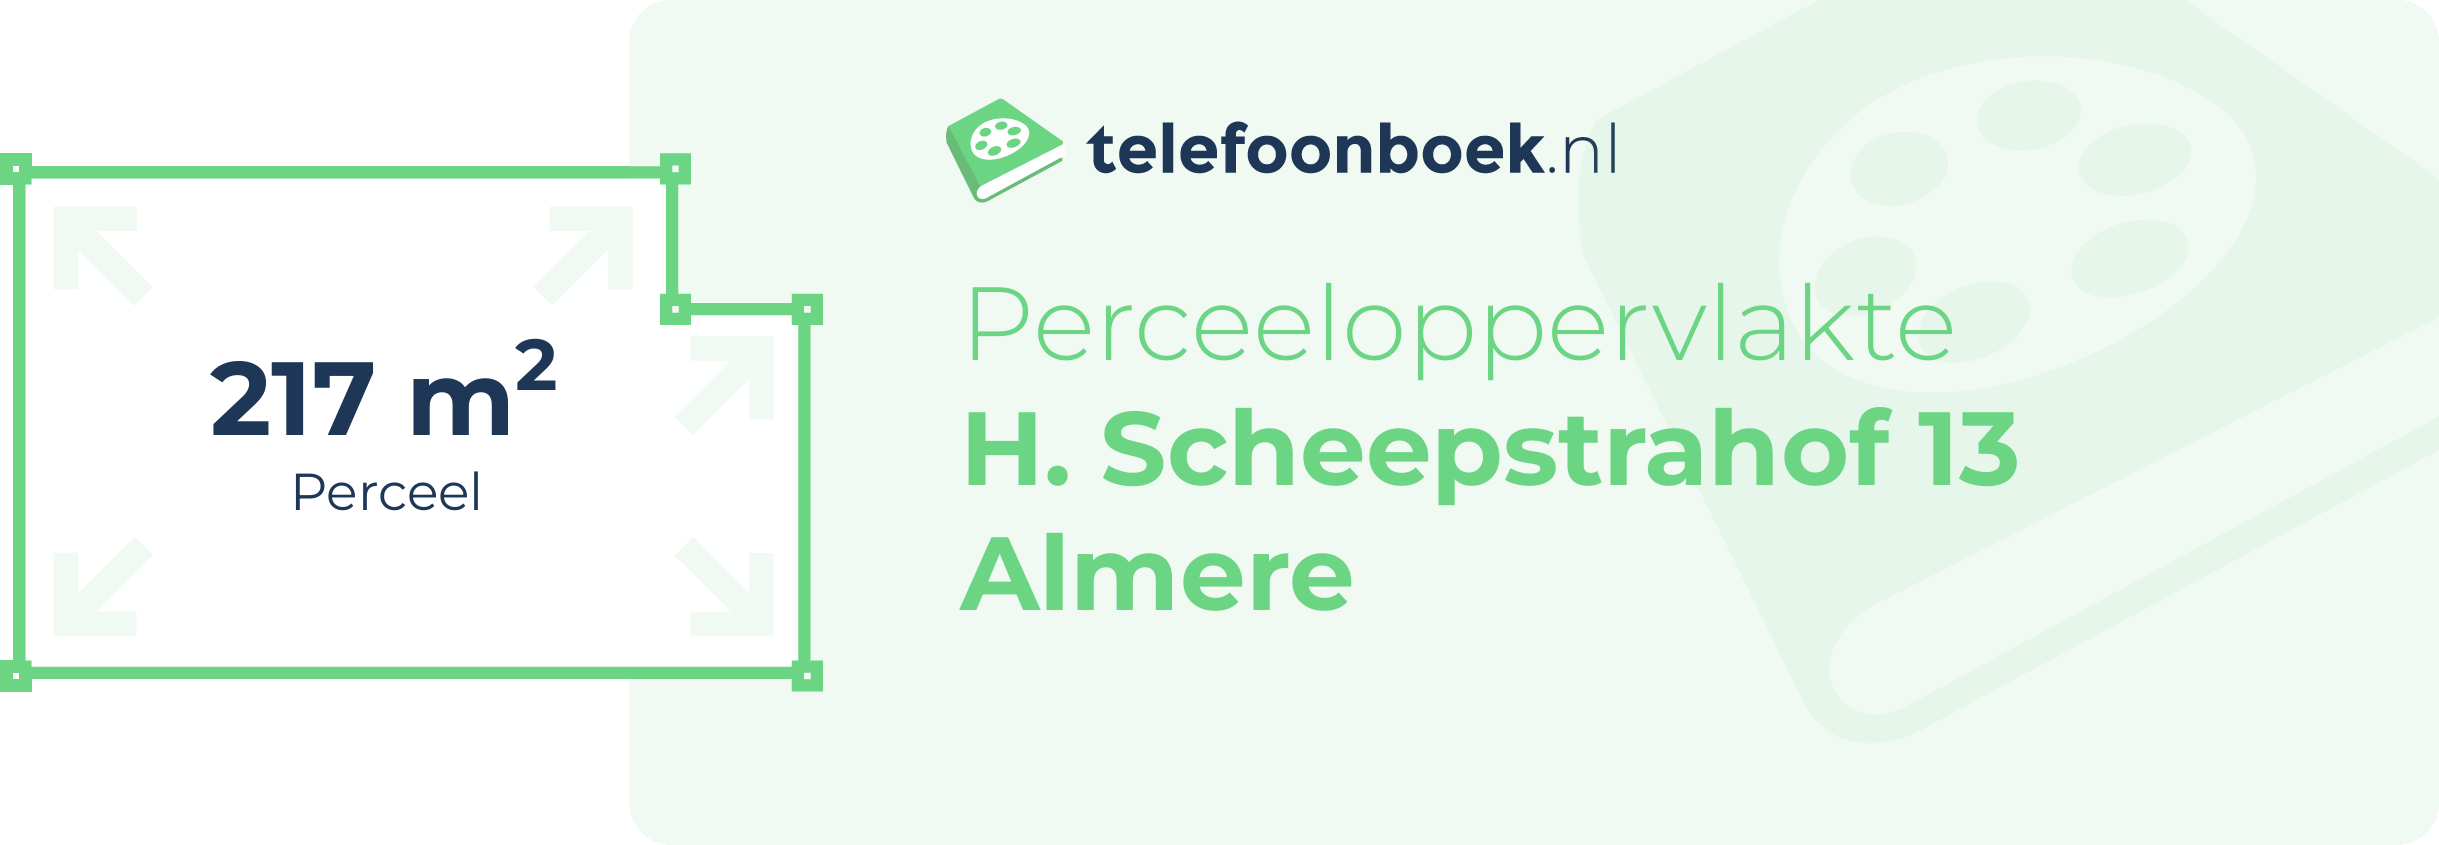 Perceeloppervlakte H. Scheepstrahof 13 Almere